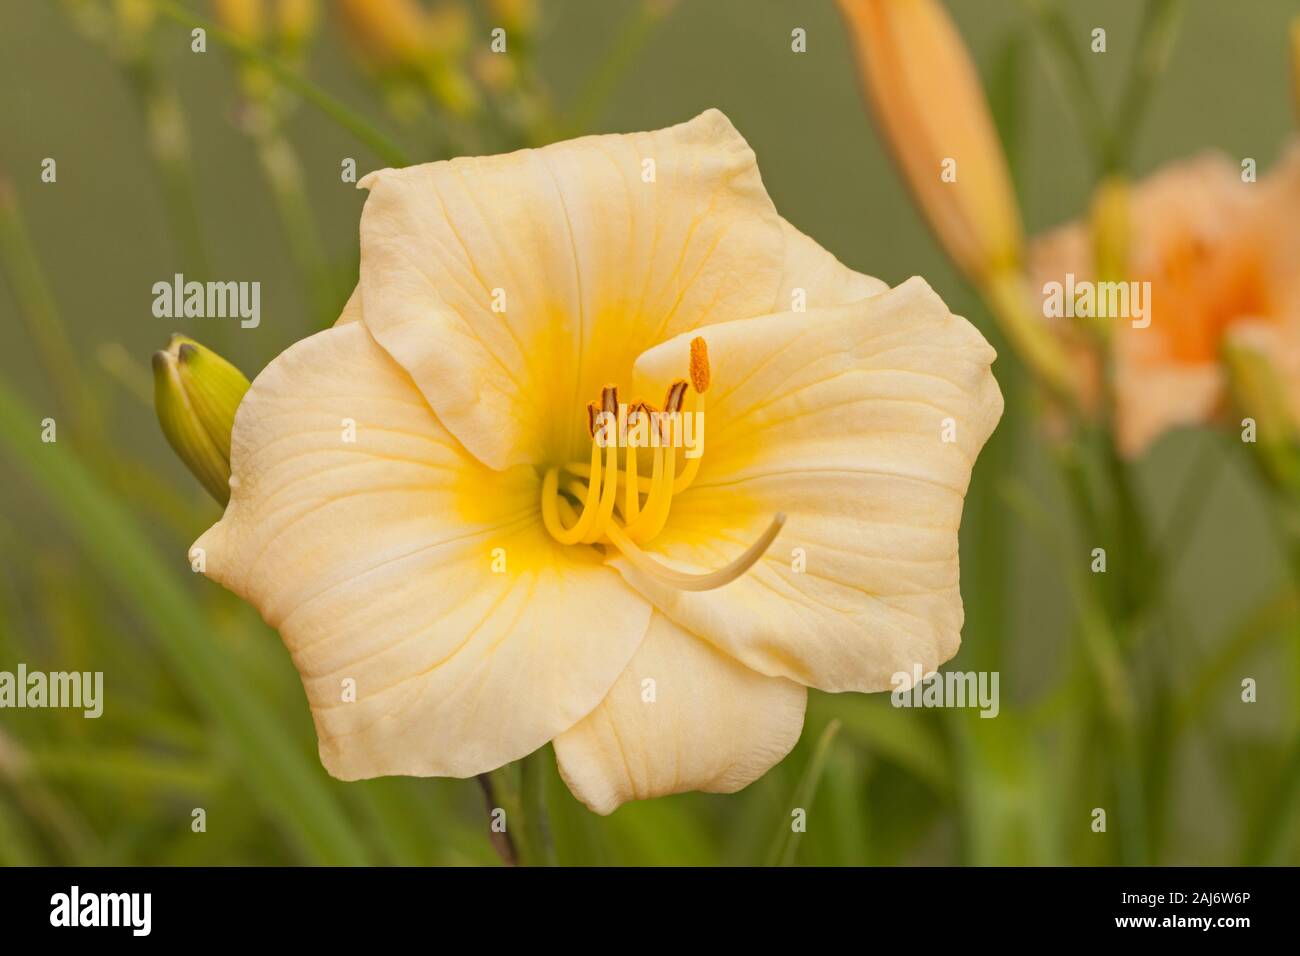 Day Lily, 'Longfield's Pearl', Hemerocallis Stock Photo